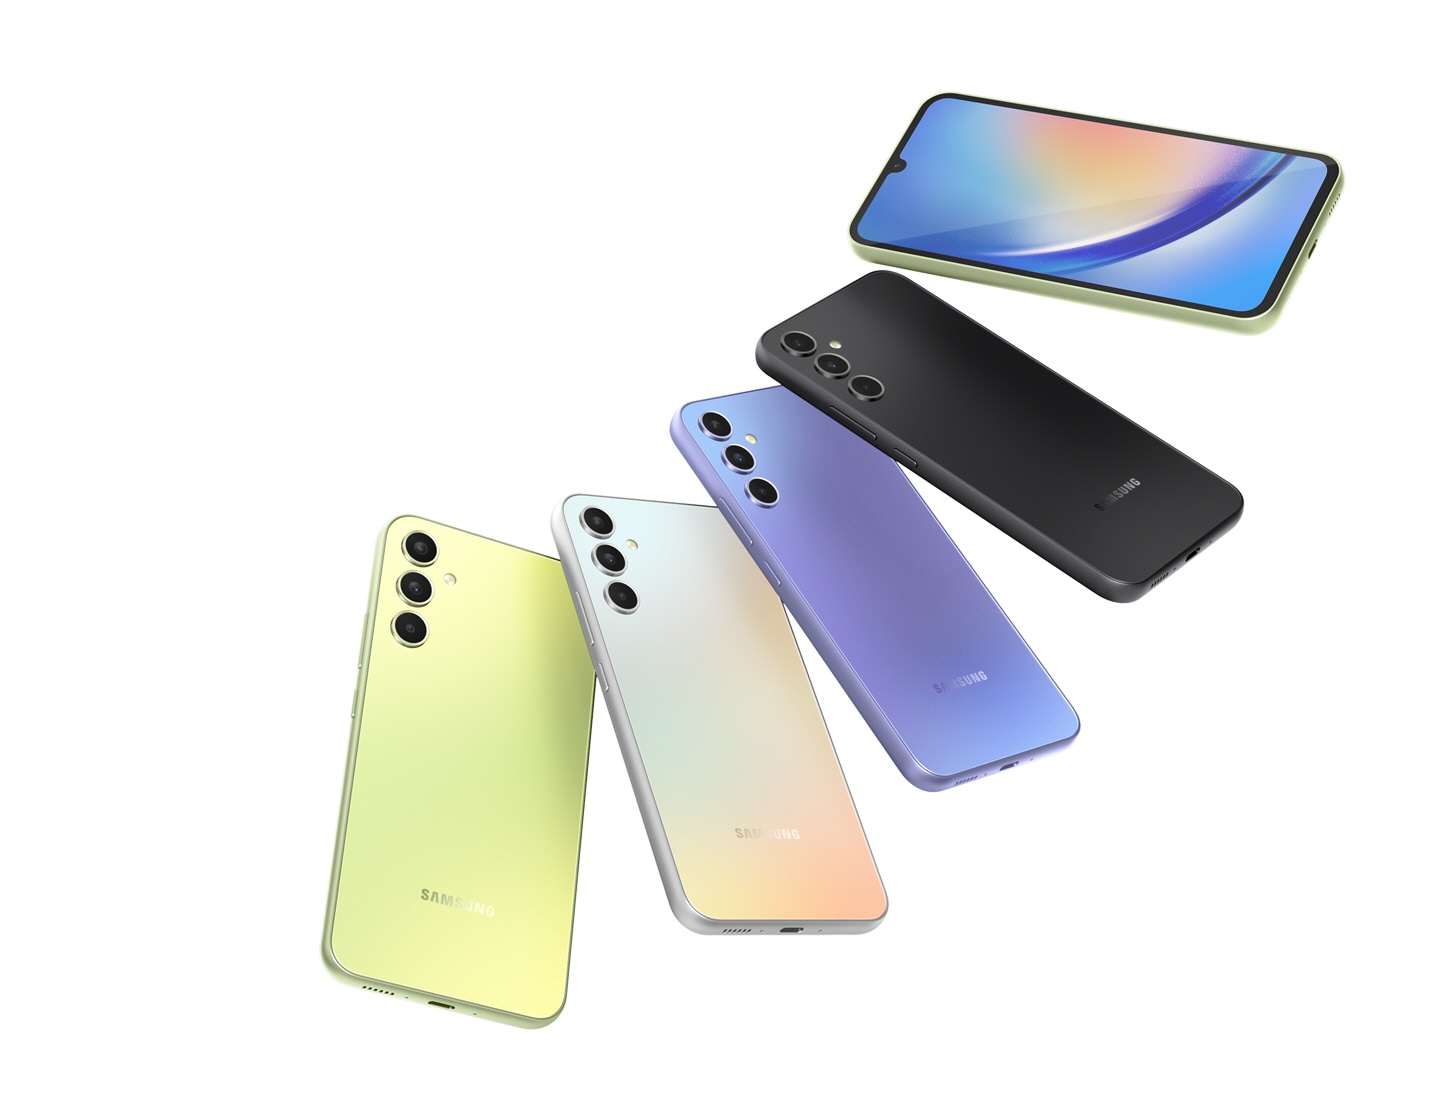 Se distribuyen cinco dispositivos Galaxy A34 5G. Cuatro dispositivos en Awesome Lime, Awesome Silver, Awesome Violet y Awesome Graphite muestran sus partes traseras, mientras que el dispositivo superior, en Awesome Lime, muestra la pantalla.